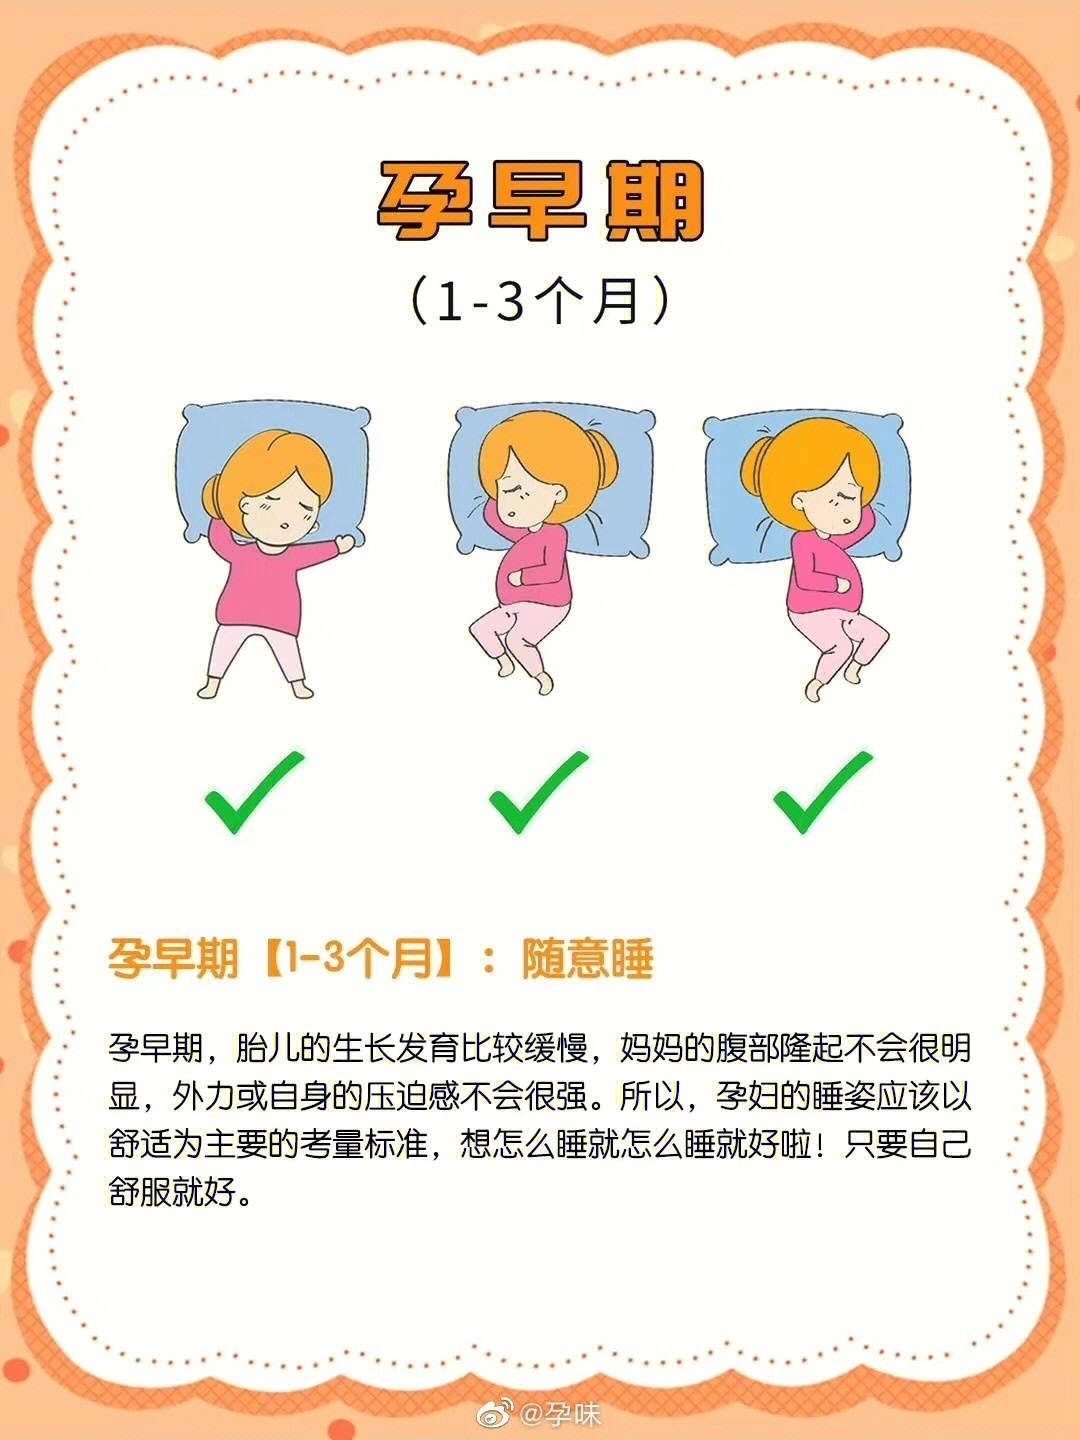 根据不同孕期应选择不同的睡姿,孕晚期最适合孕妇的睡姿是左侧卧